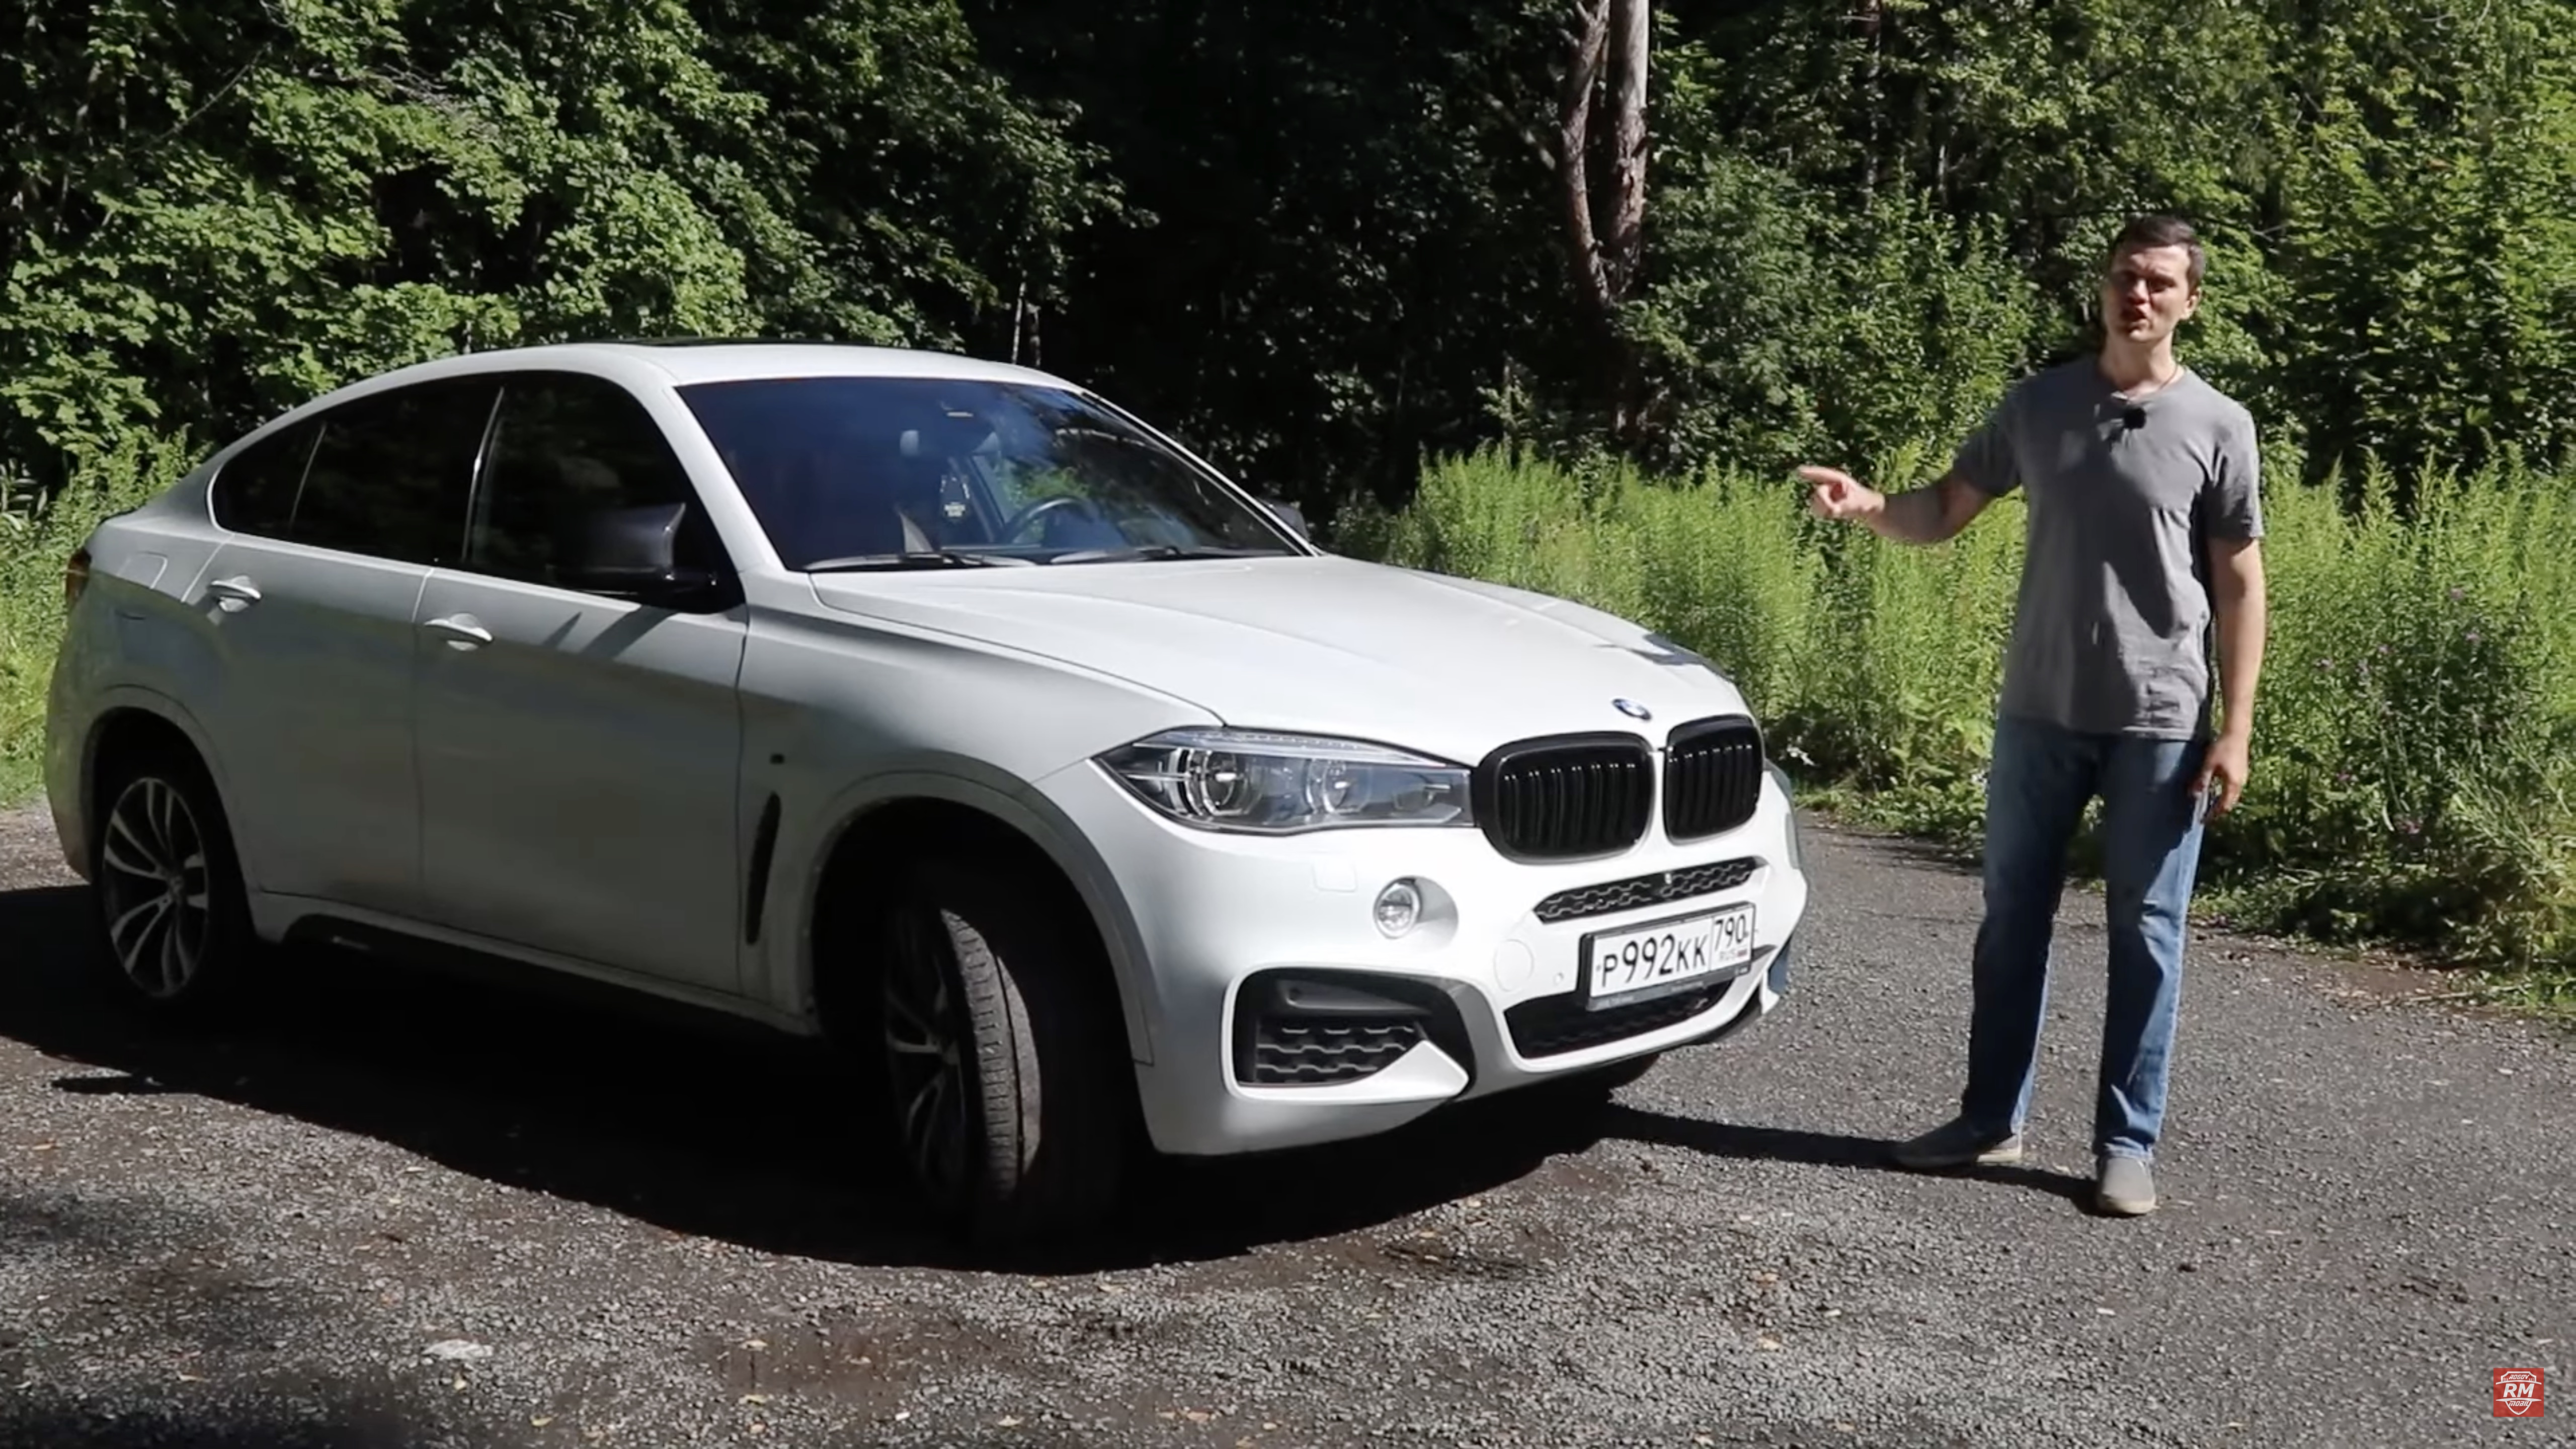 Анонс видео-теста Цены содержания BMW сегодня!